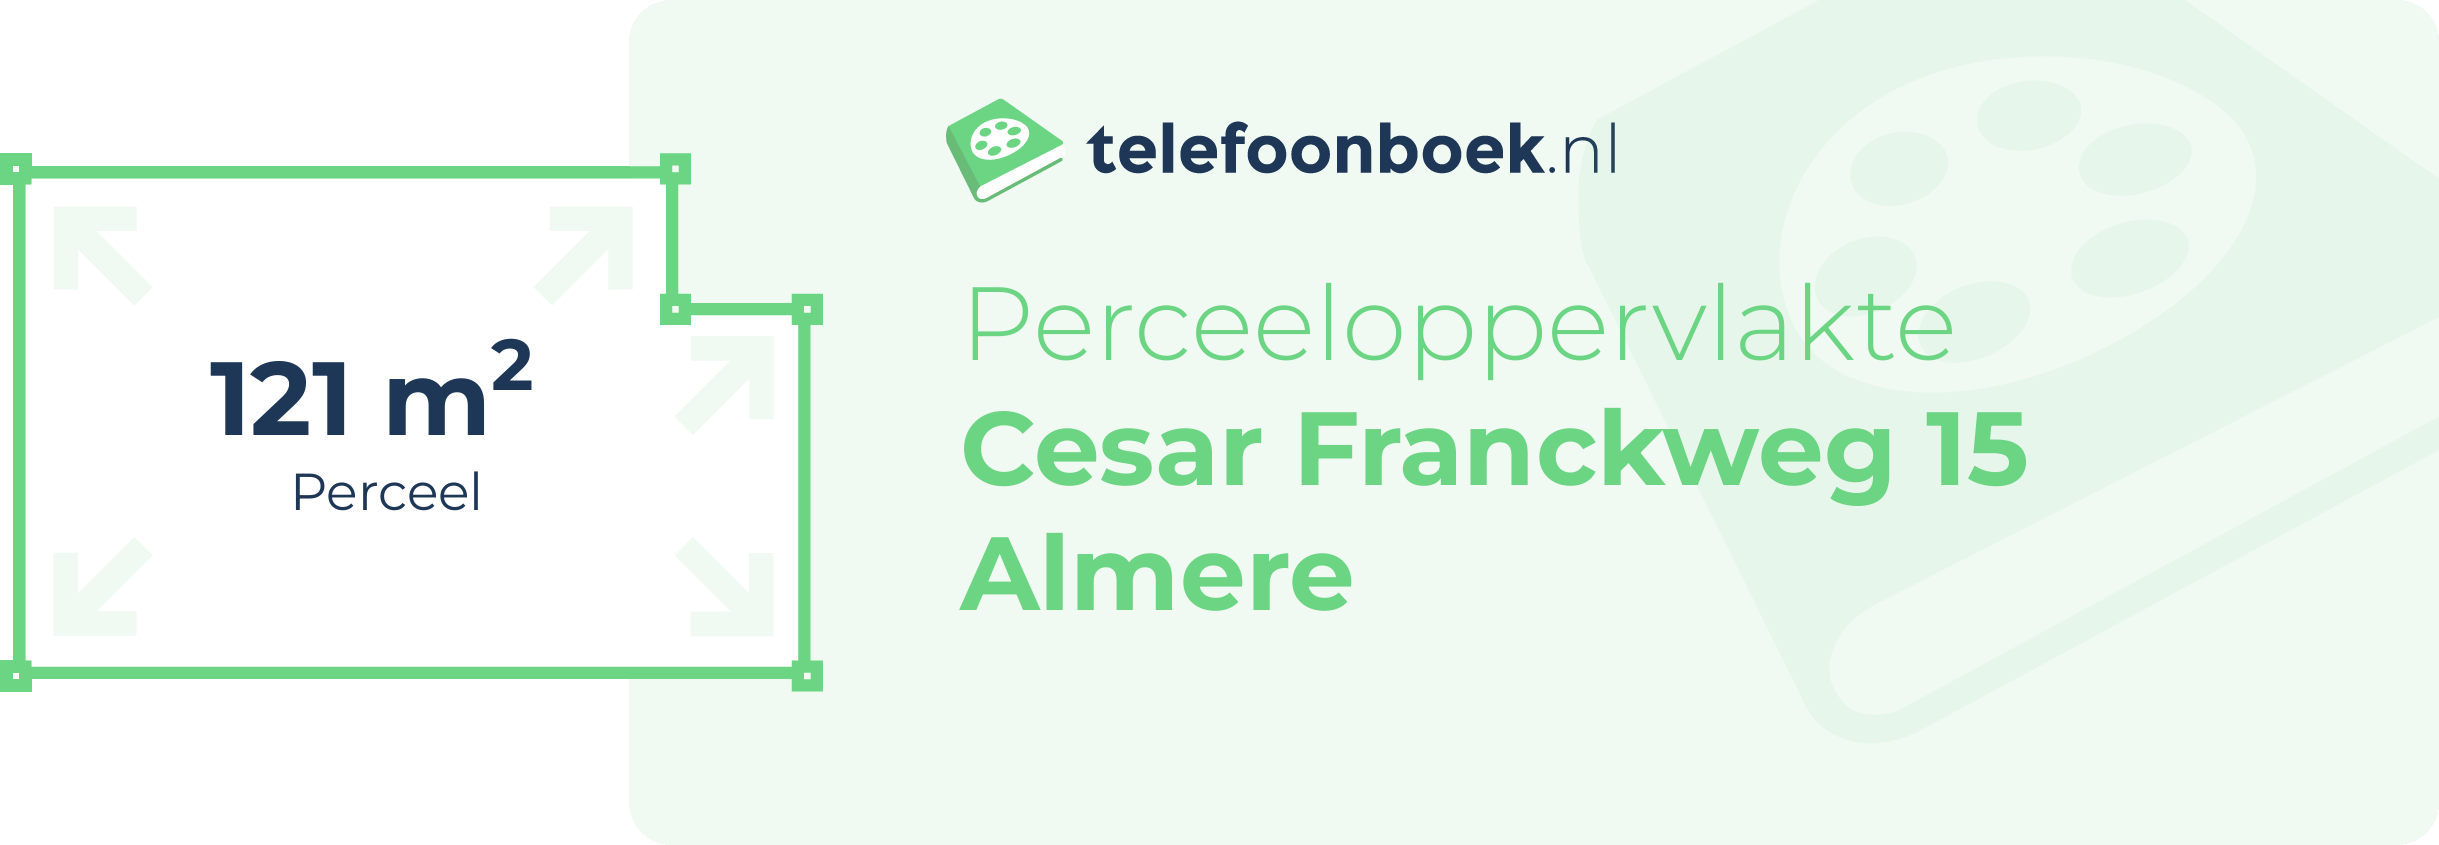 Perceeloppervlakte Cesar Franckweg 15 Almere